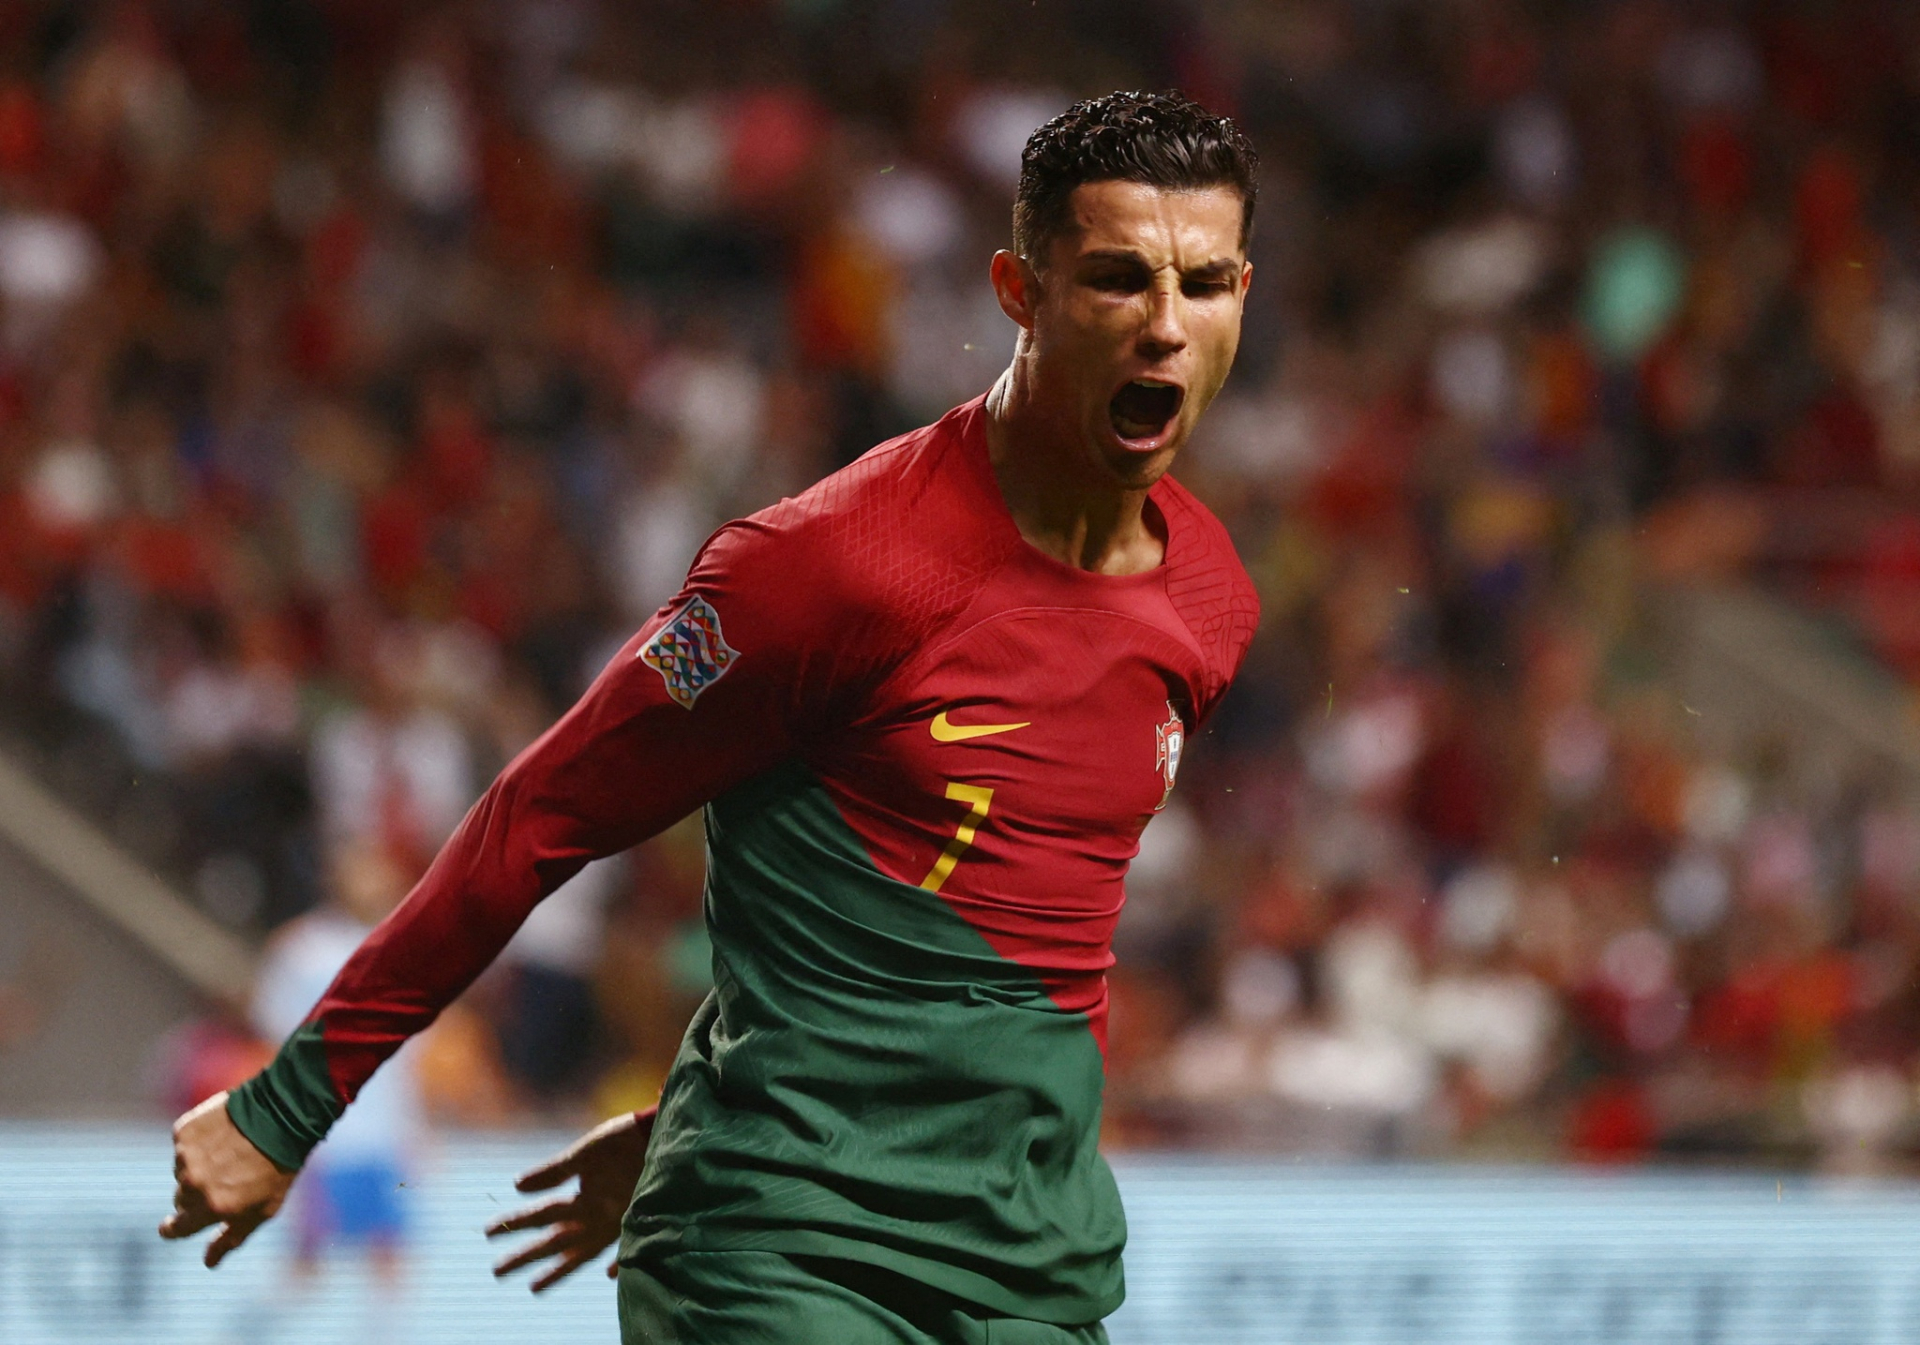 Cầu thủ Ronaldo ấn định thời gian giải nghệ, thế giới bóng đá sắp mất đi một ngôi sao lớn - ảnh 3